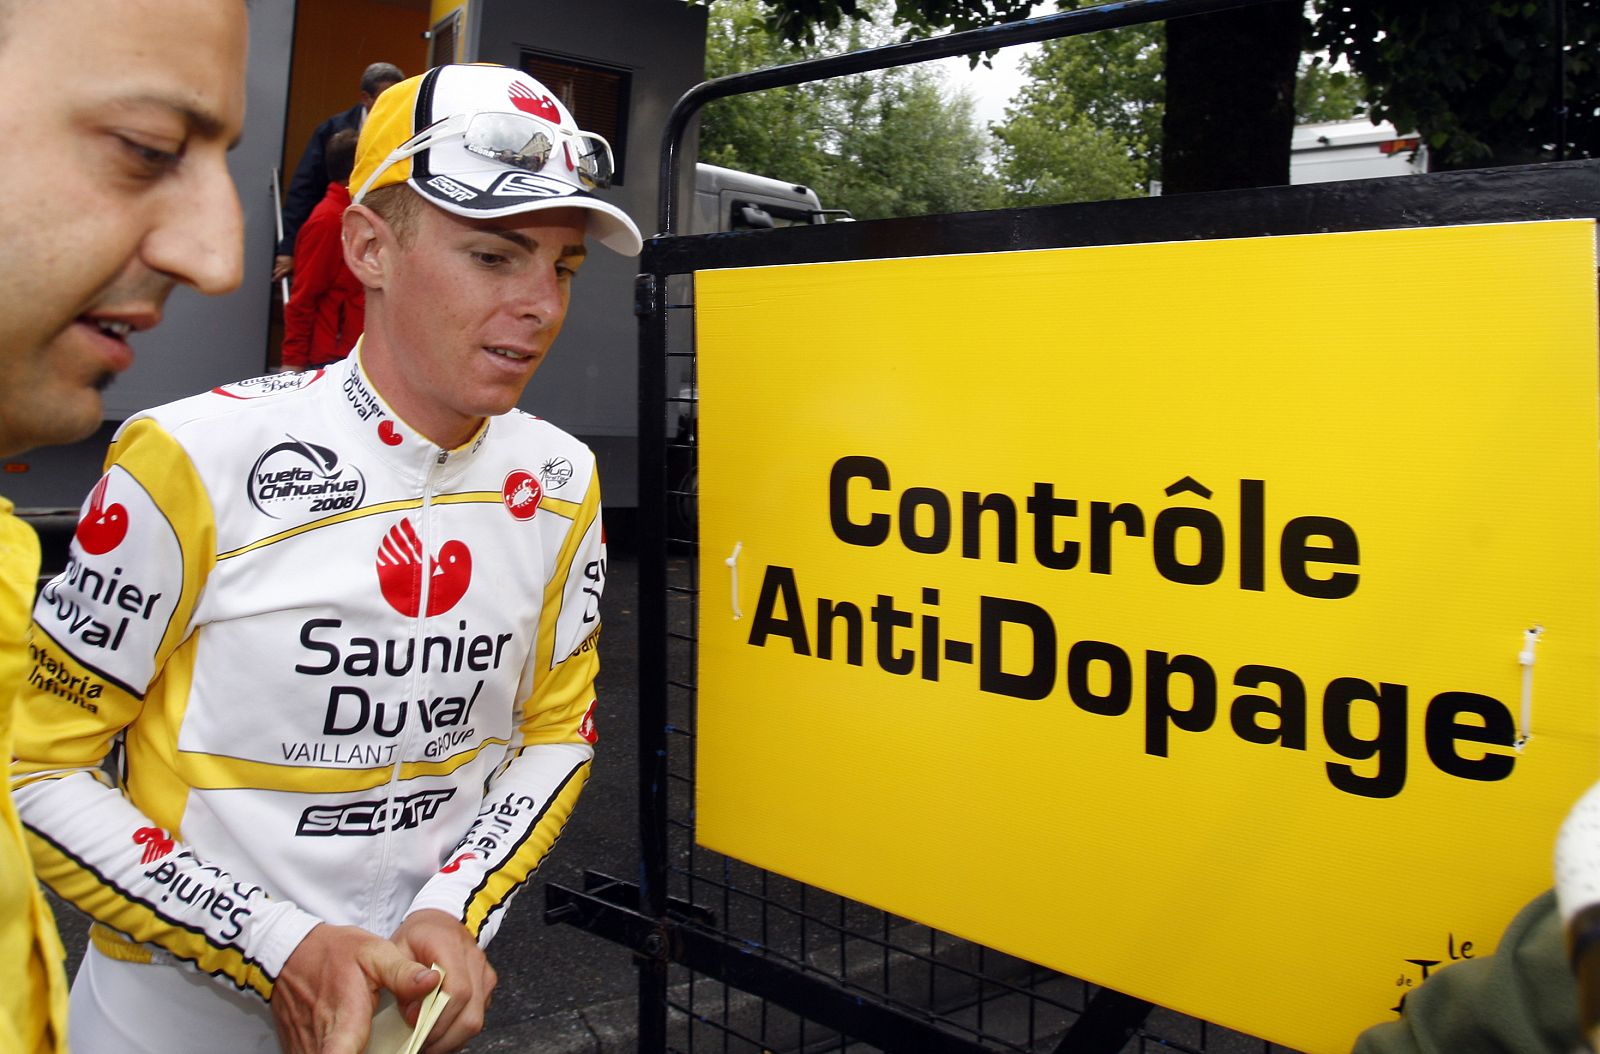 El ciclista italiano del Saunier Duval, Riccardo Ricco, pasa un control antidopaje después de ganar en la novena etapa del Tour, en Bagnères de Bigorre.